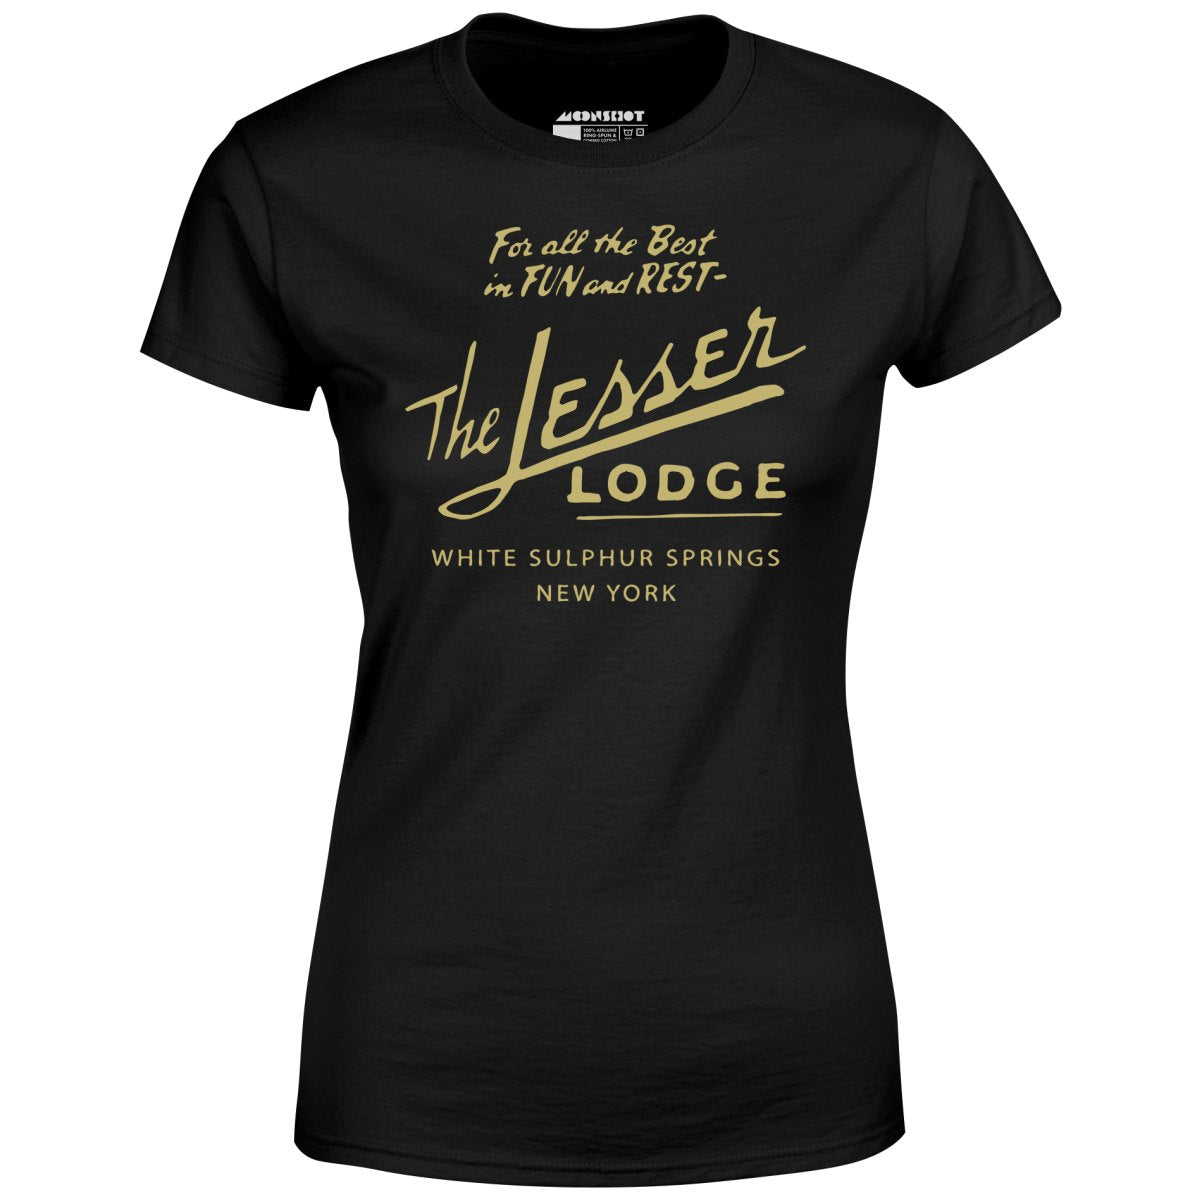 The Lesser Lodge - White Sulphur Springs, NY - Women's T-Shirt